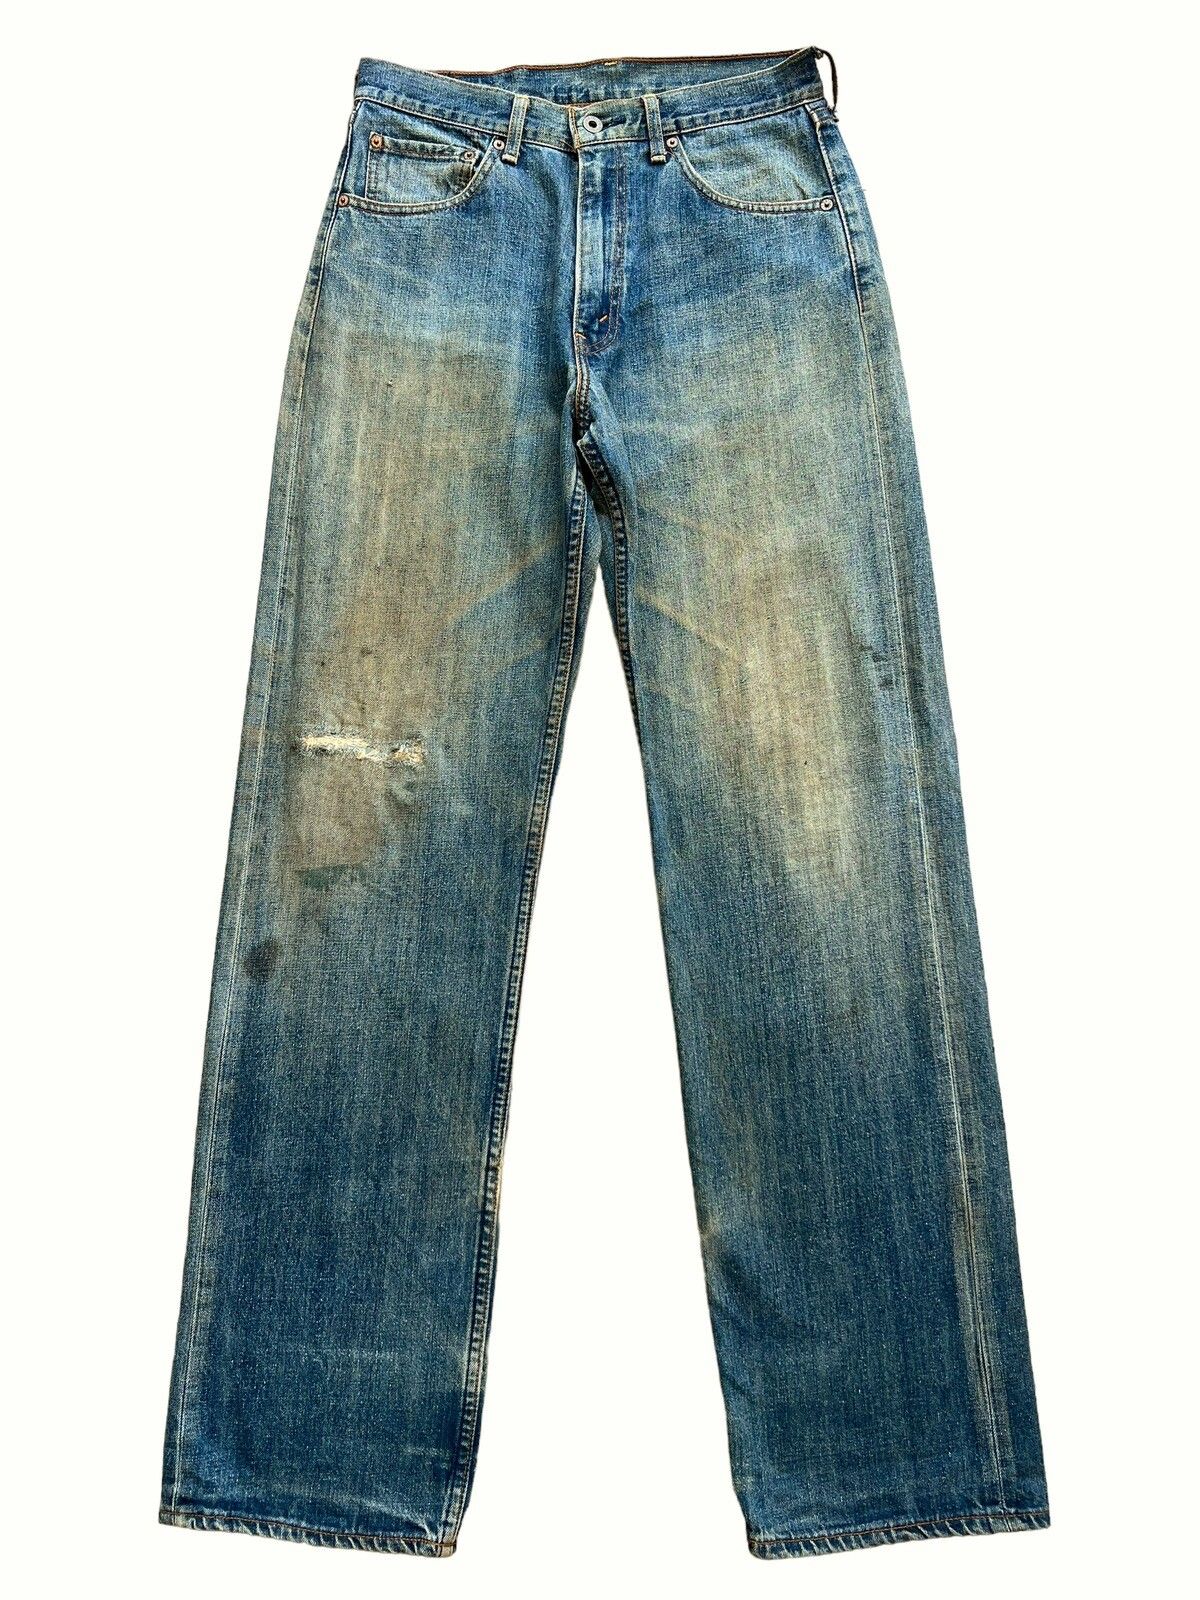 Vintage 90s Levis Distressed Mudwash Patch Denim Jeans 30x35 - 1